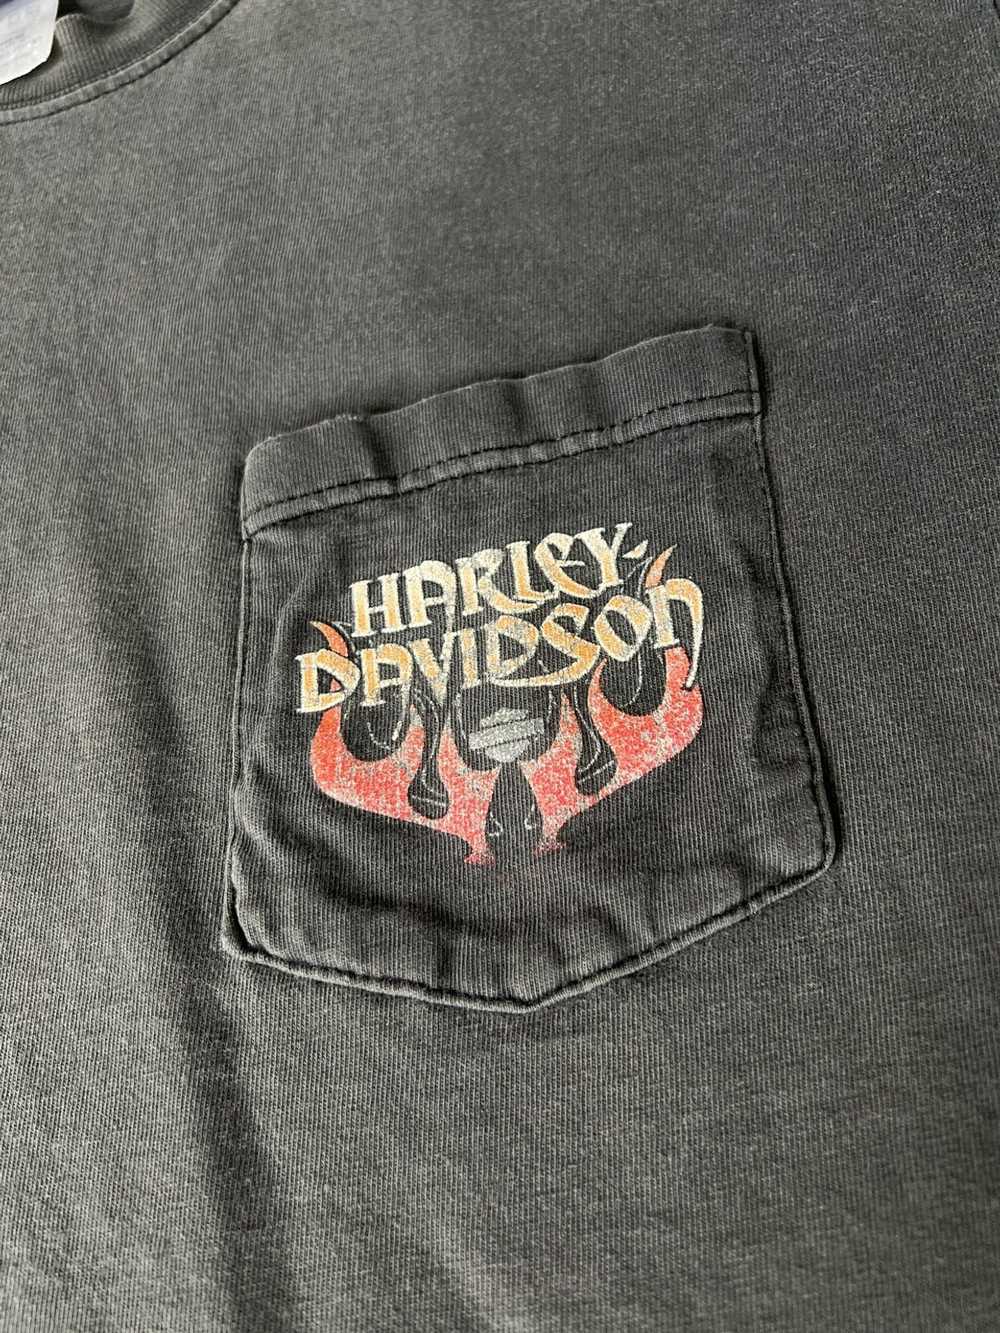 Harley Davidson × Vintage Vintage 1998 Harley Dav… - image 5